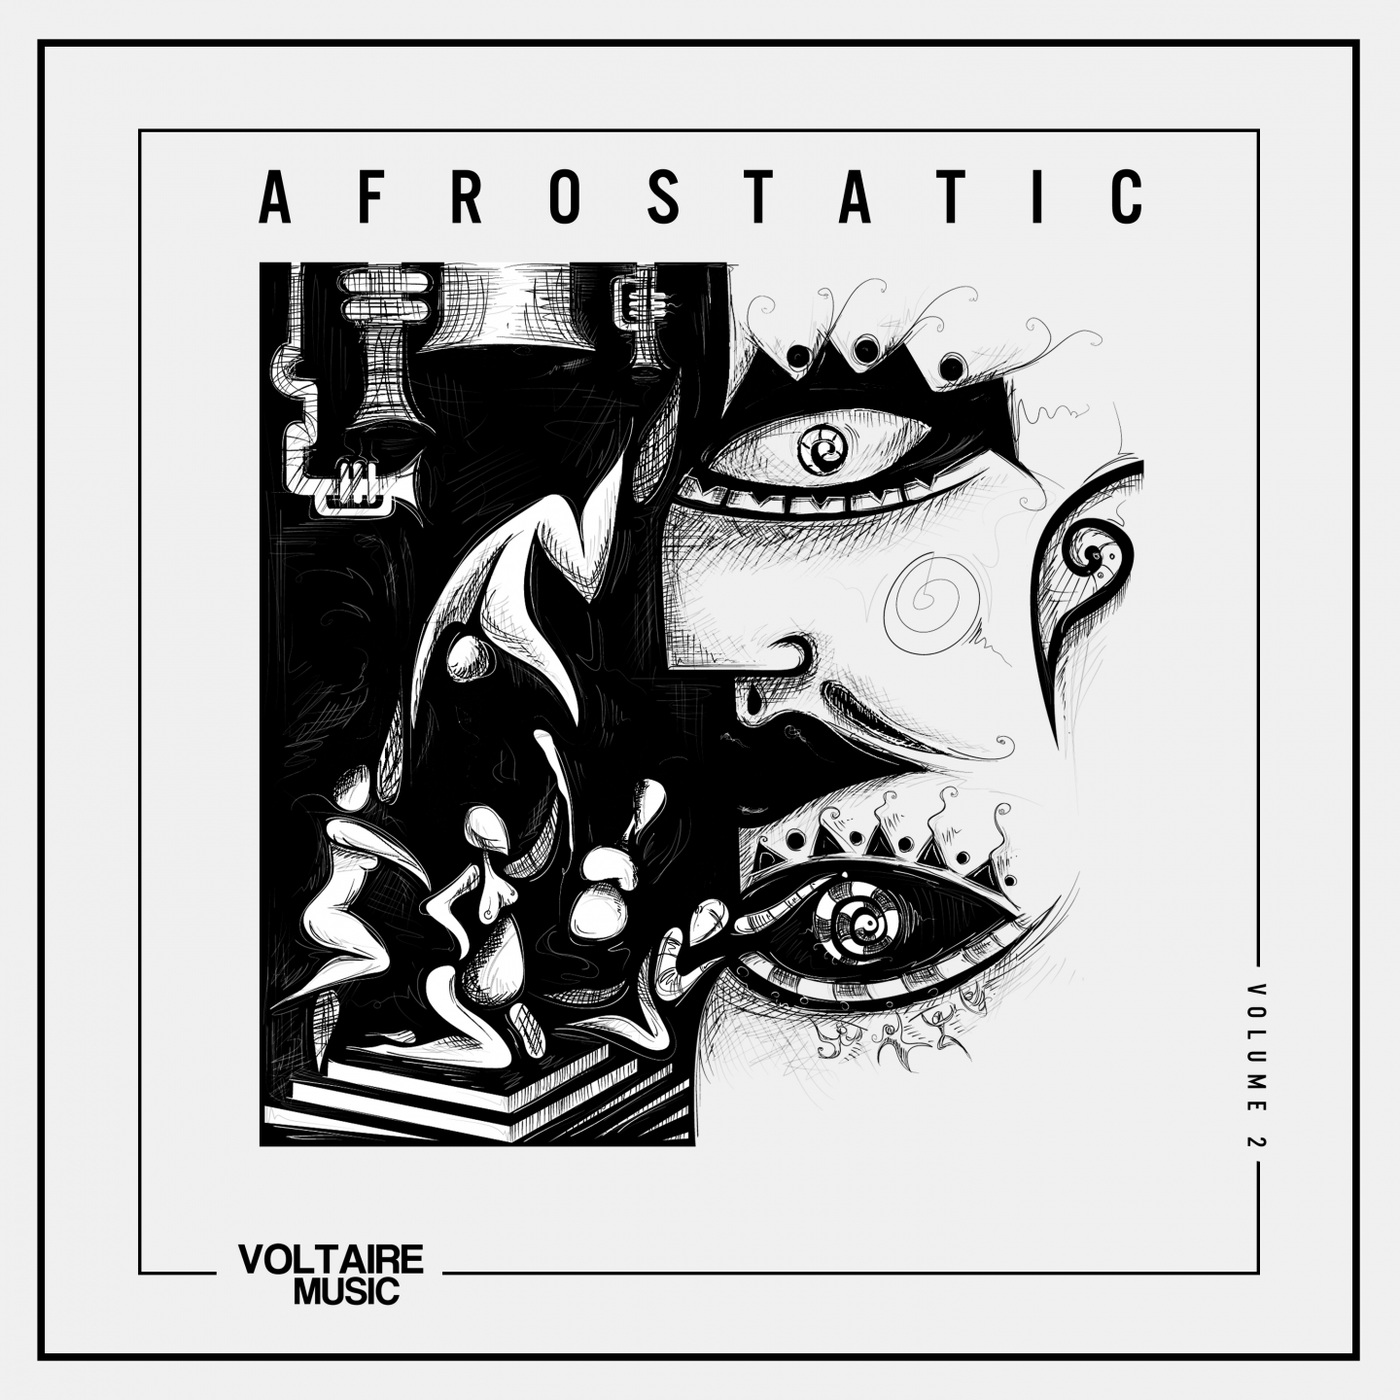 VA - Voltaire Music pres. Afrostatic, Vol. 2 / Voltaire Music